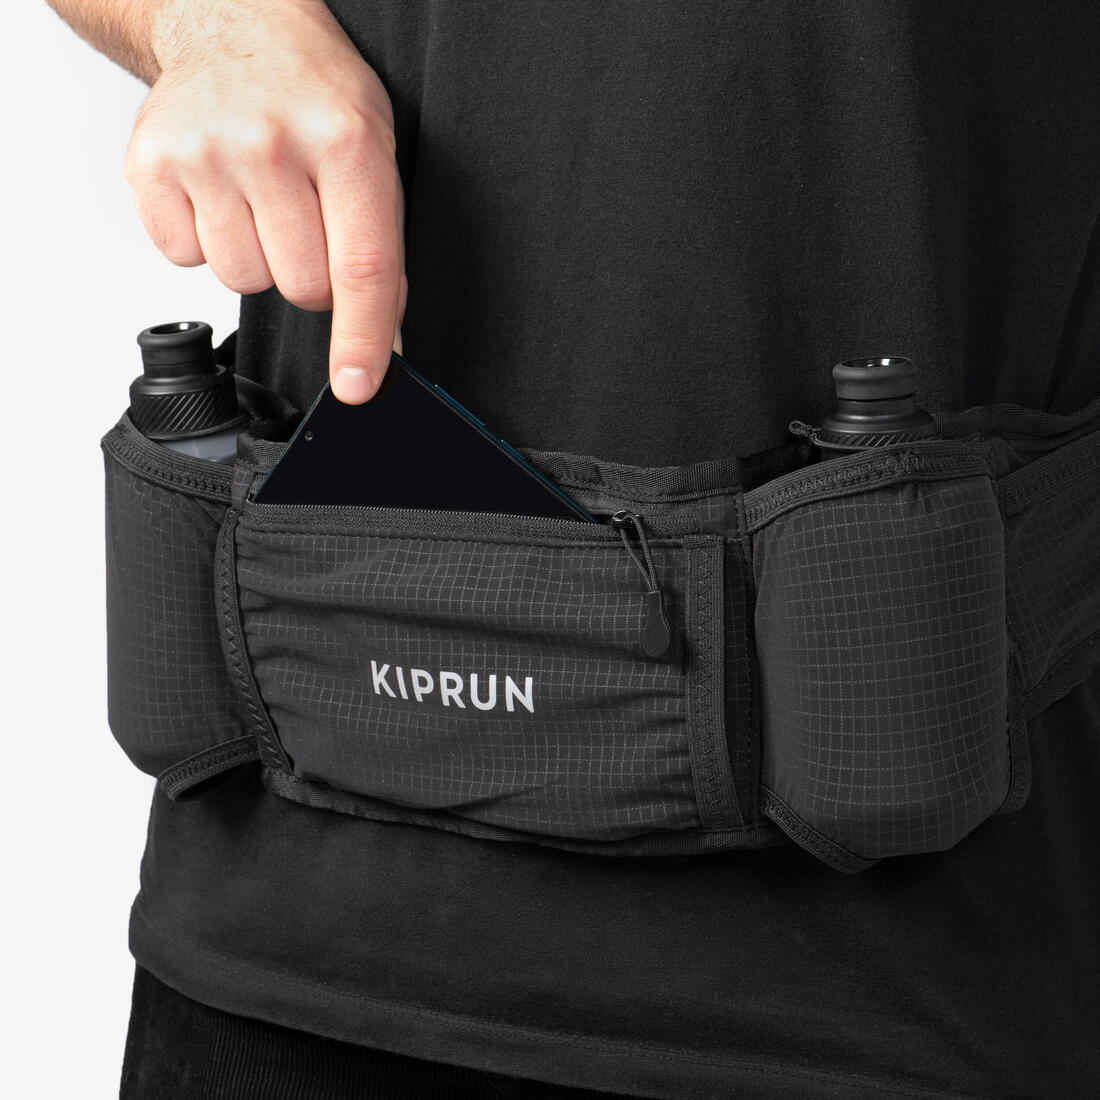 KIPRUN (キプラン) ランニング ユニセックス ハイドレーションベルト 250mlボトル2本 Belt 500